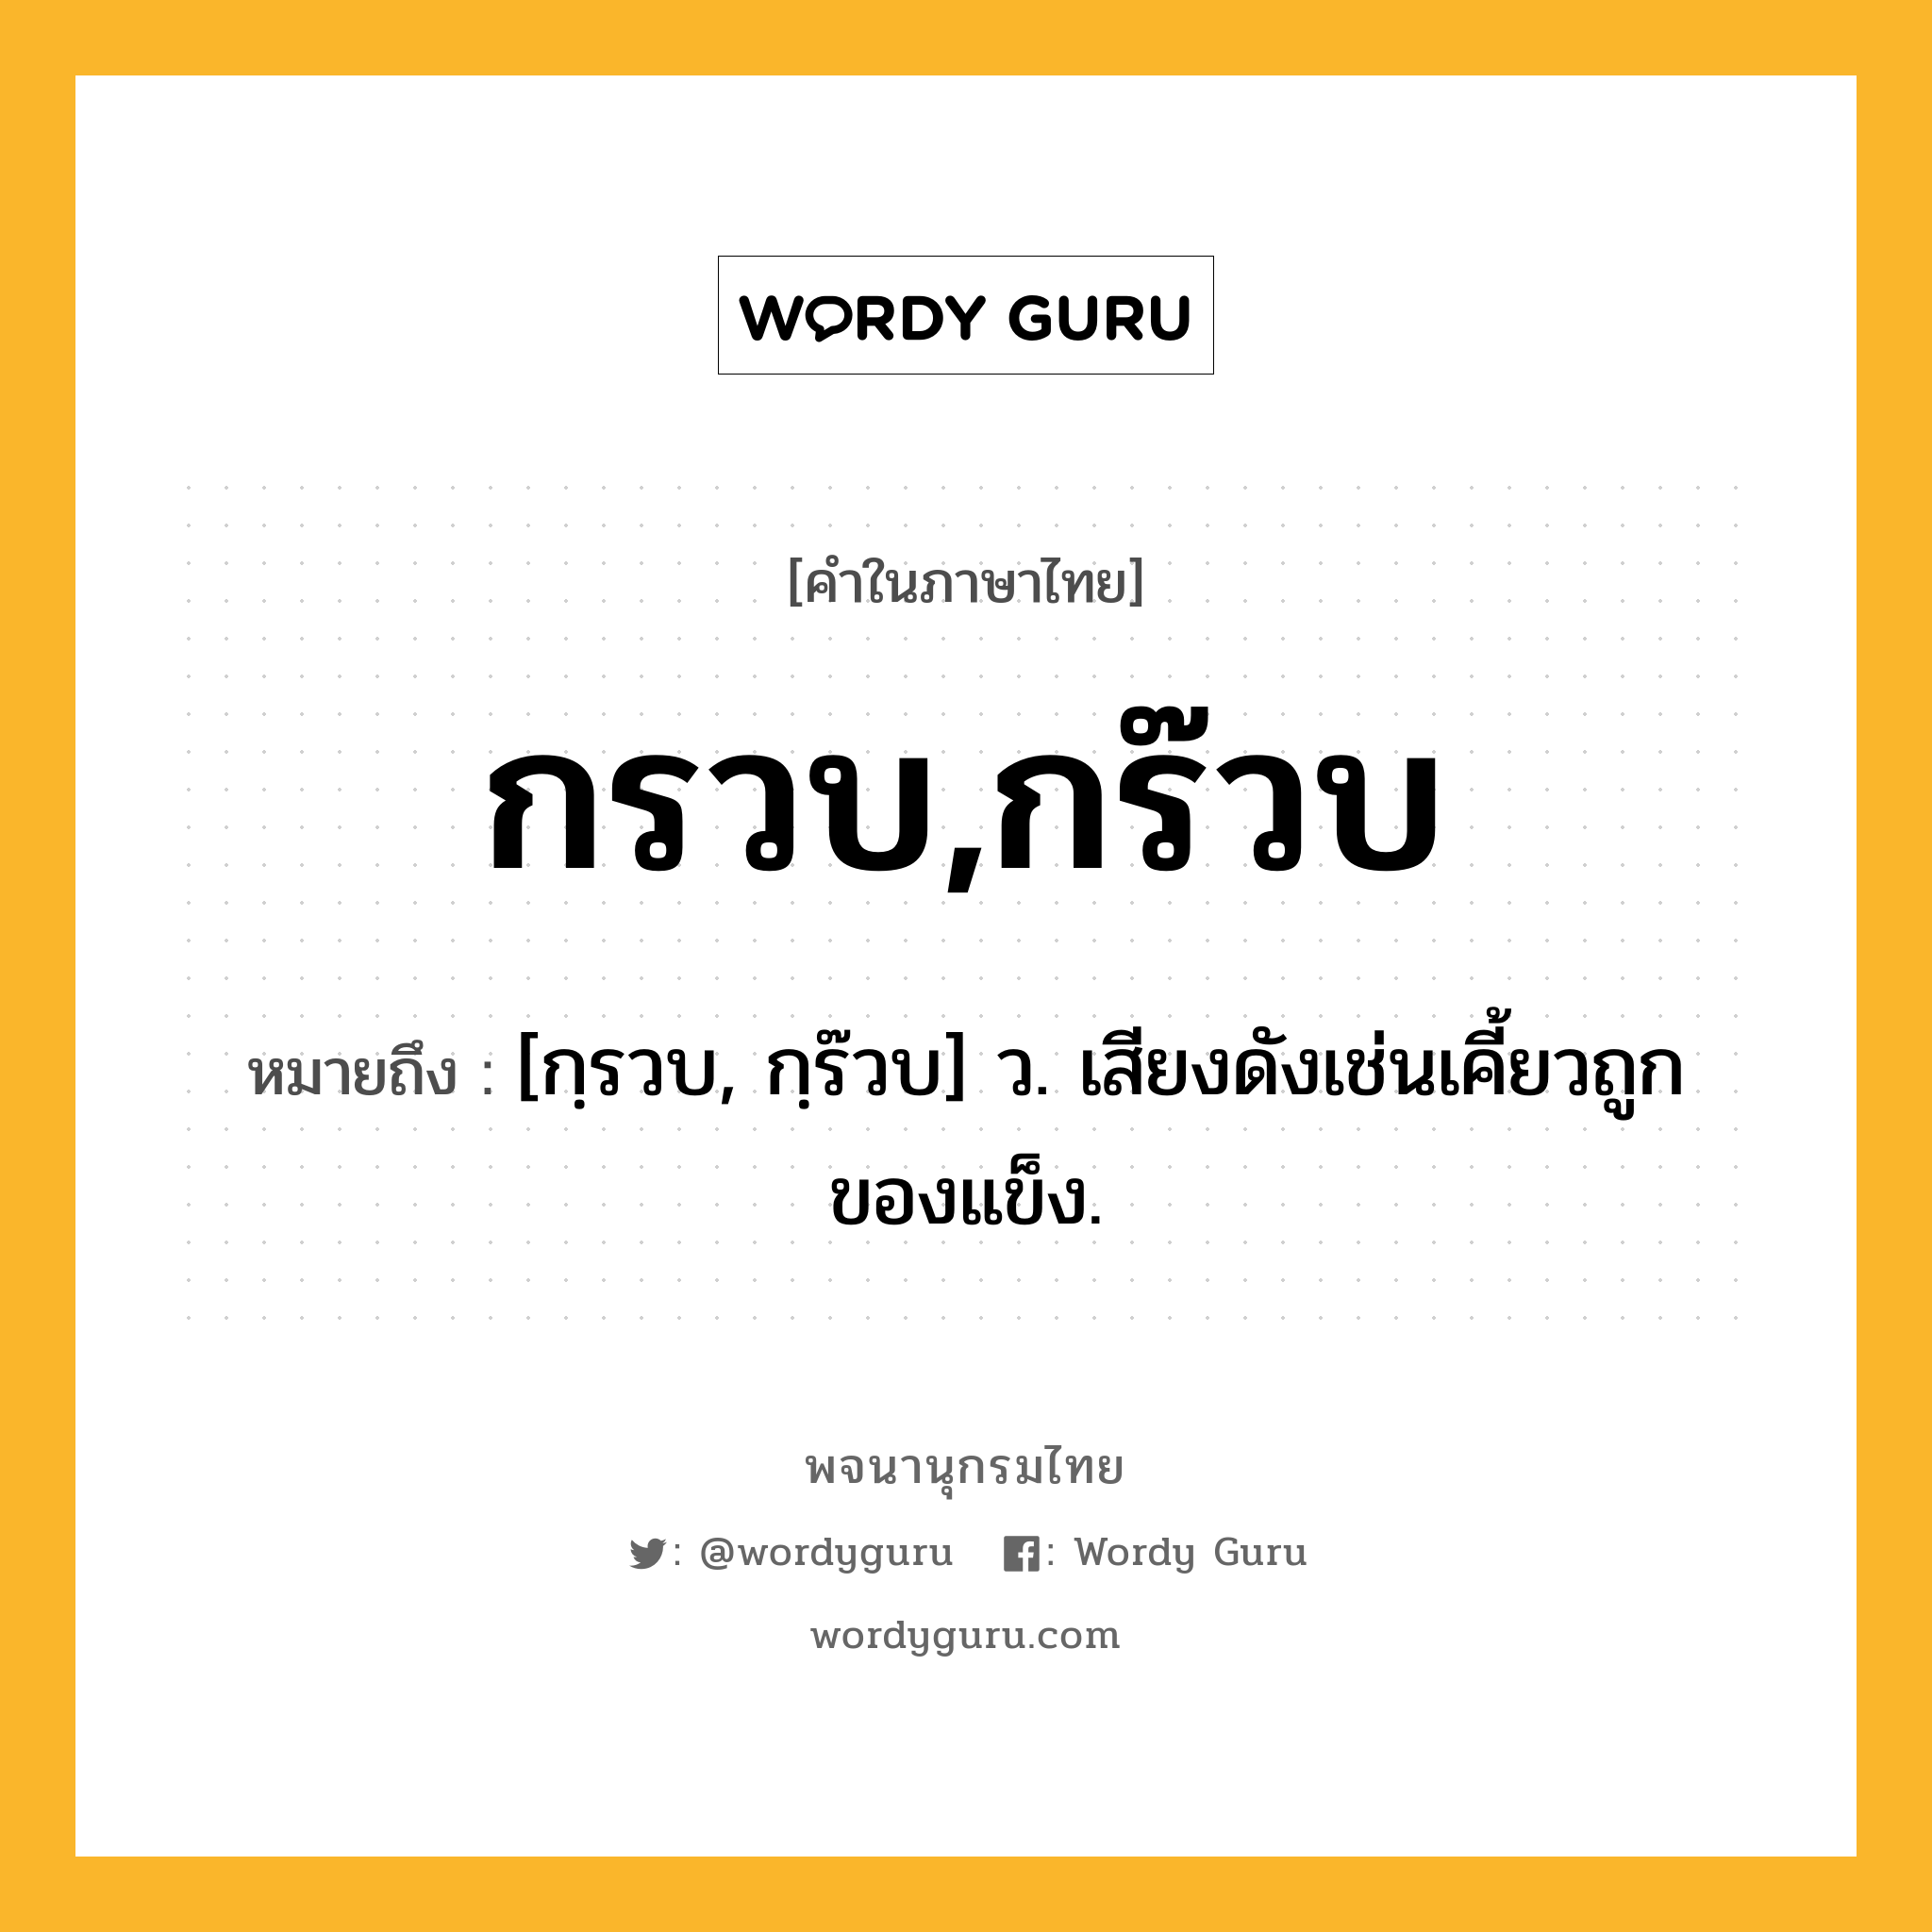 กรวบ,กร๊วบ หมายถึงอะไร?, คำในภาษาไทย กรวบ,กร๊วบ หมายถึง [กฺรวบ, กฺร๊วบ] ว. เสียงดังเช่นเคี้ยวถูกของแข็ง.